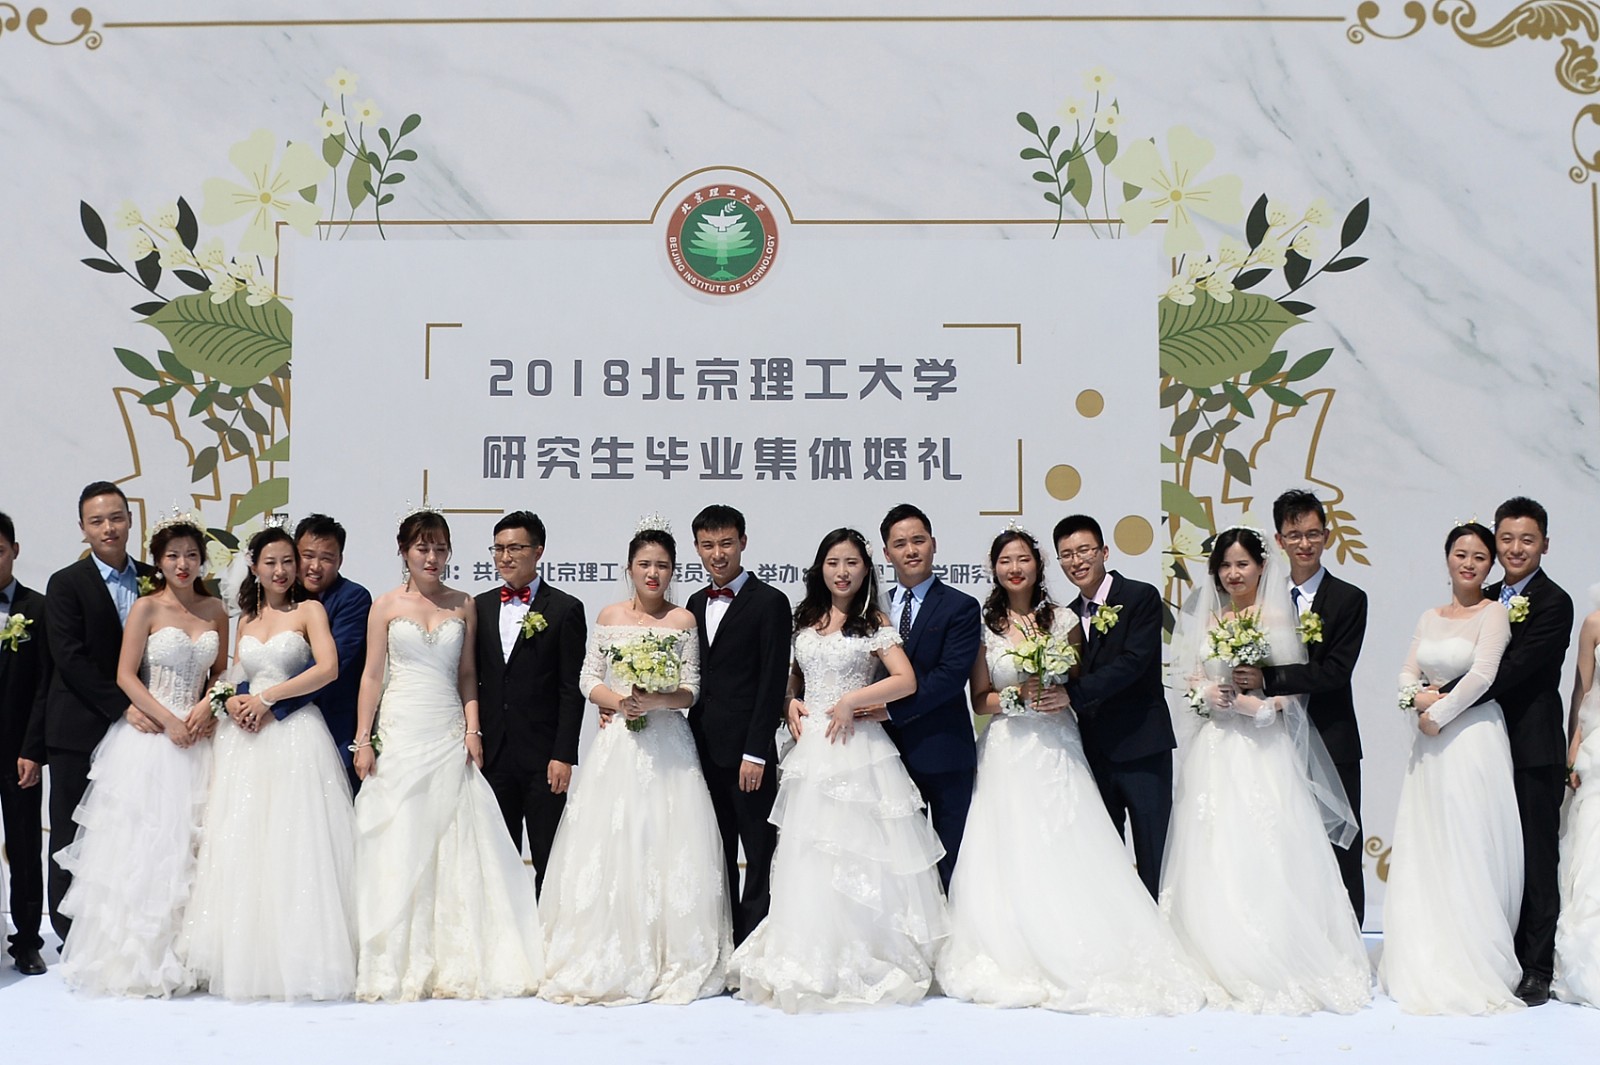  2018年6月10日，北京理工大学第二届研究生毕业集体婚礼在北京理工大学中心花园举行。此次集体婚礼共有18对新人参加。（来源：视觉中国）